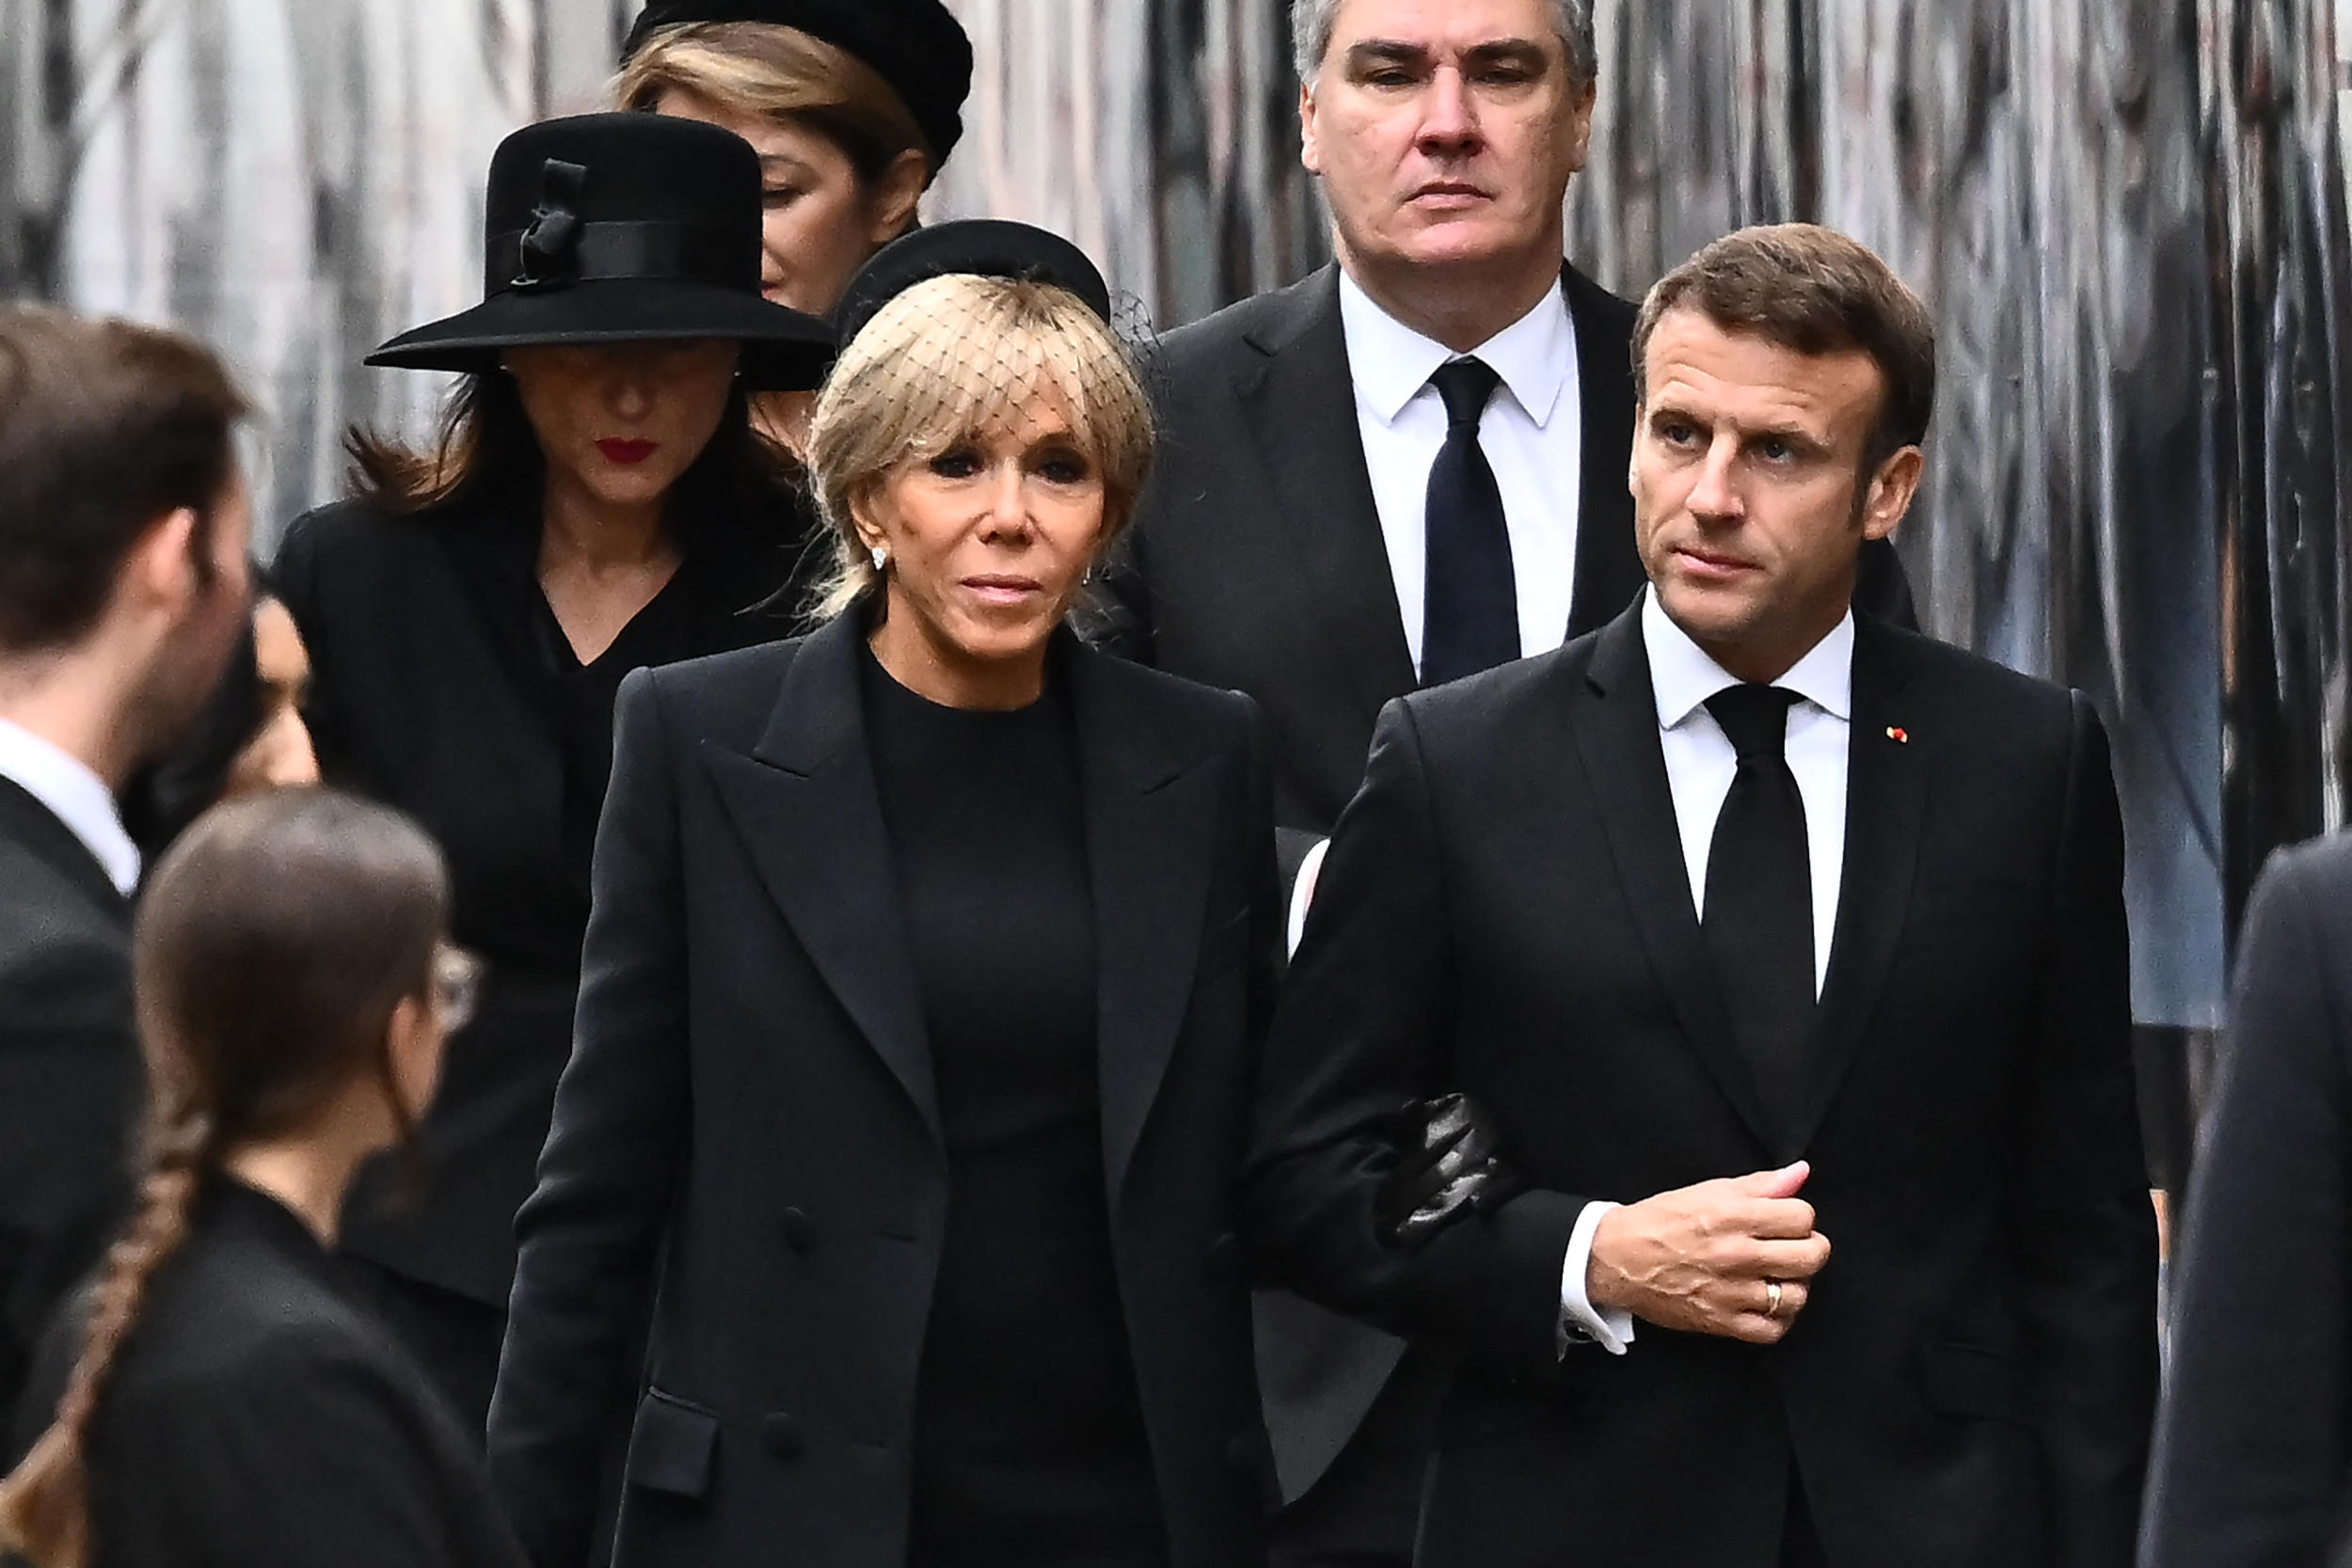 Le président de la République Emmanuel Macron est arrivé à l'abbaye de Westminister en compagnie de son épouse, Brigitte. Marco BERTORELLO / AFP